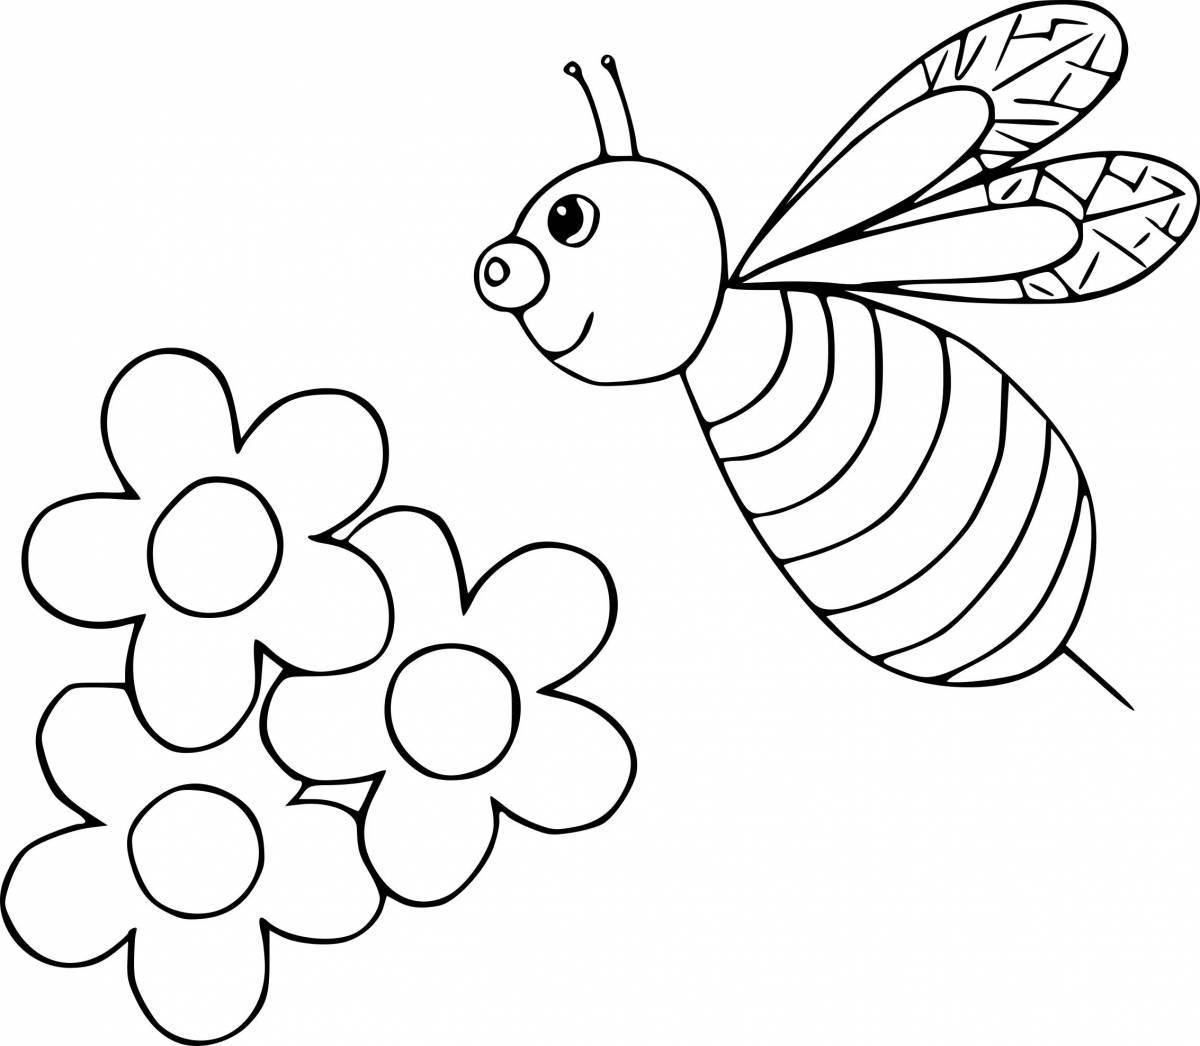 Занимательные раскраски насекомых для детей 3-4 лет